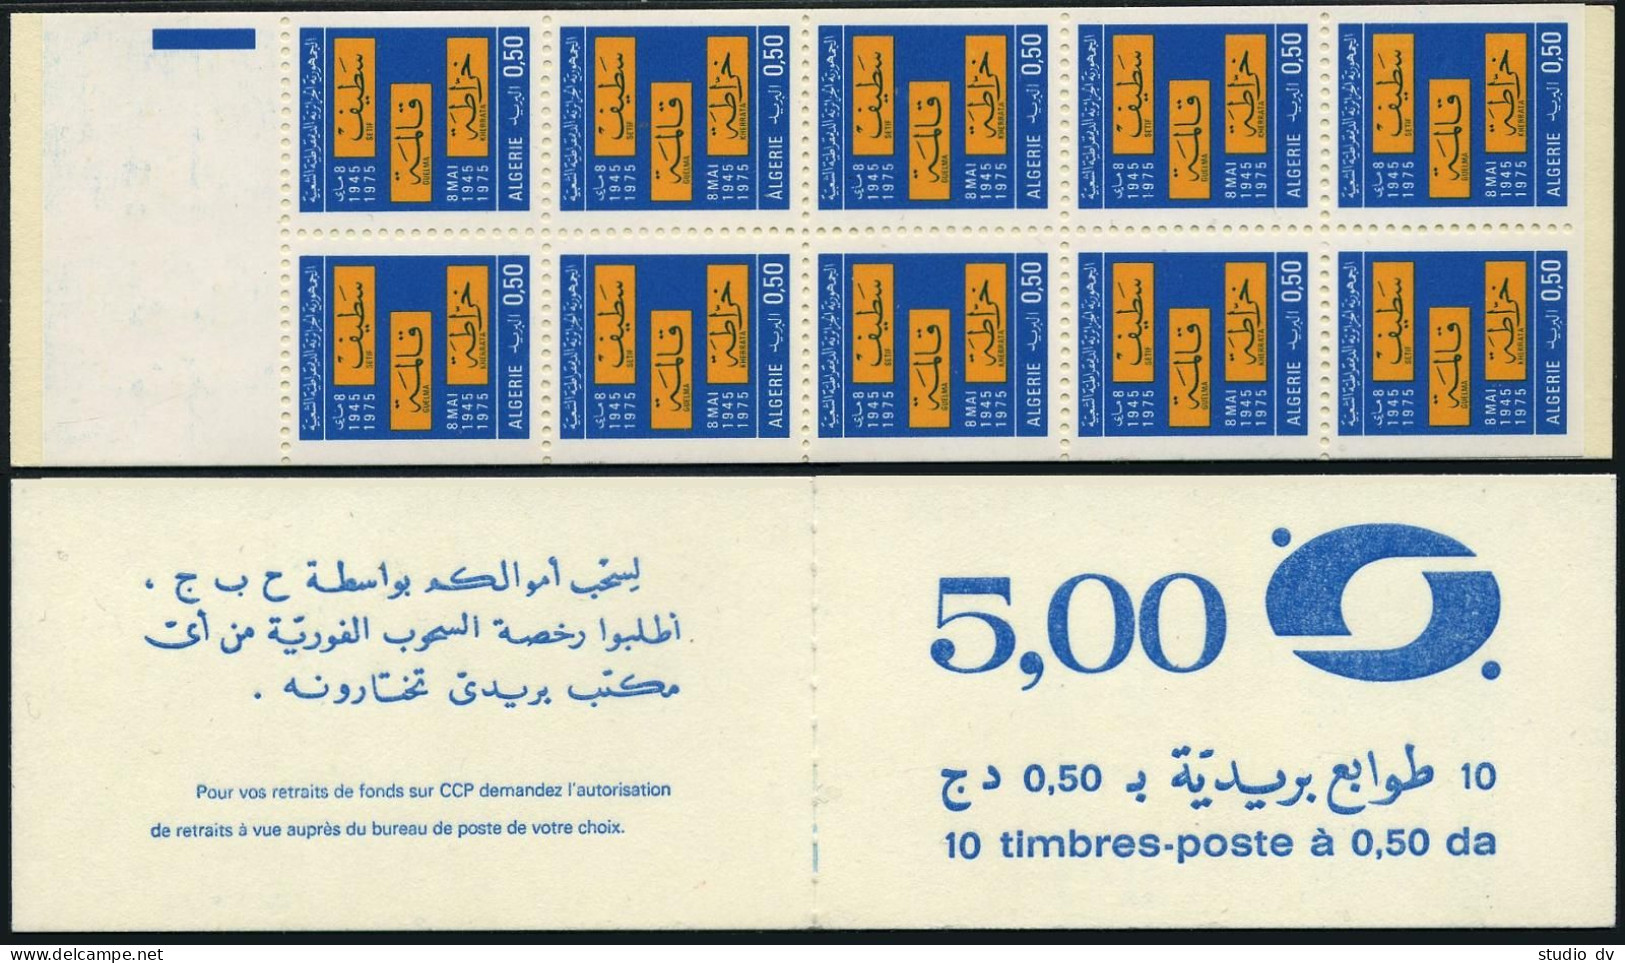 Algeria 572b Booklet Of 10, MNH. Michel 682 MH 2. Setif,Guelma, Kherrata, 1976. - Algeria (1962-...)